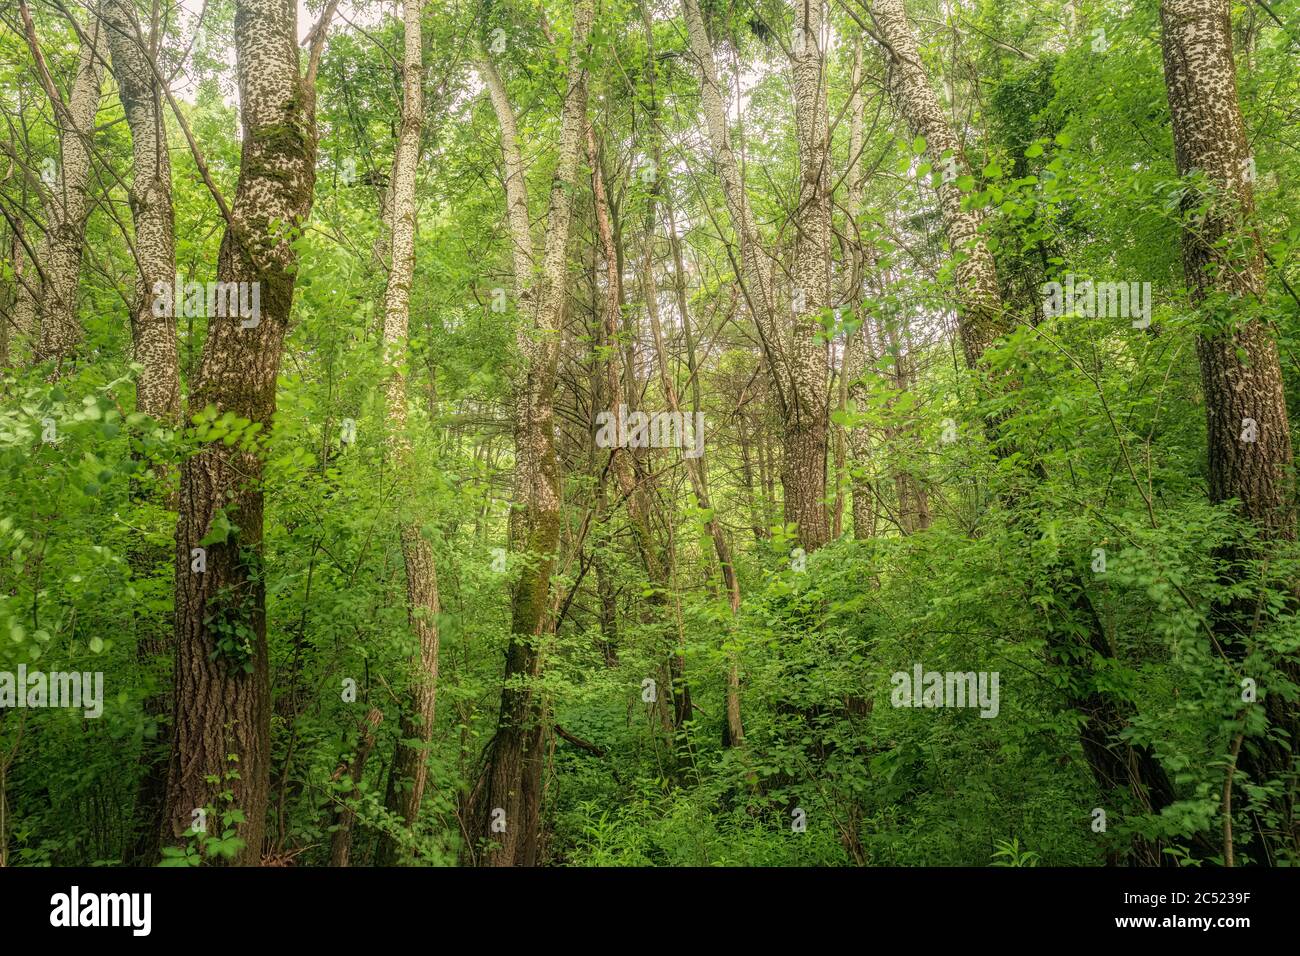 Eastern Pappel Bäume wachsen in einem Südosten Michigan Naturschutzgebiet, Macomb County, Michigan. Bäume sind nach wie vor die kostengünstigste Lösung zur Kohlenstoffabscheidung. Stockfoto